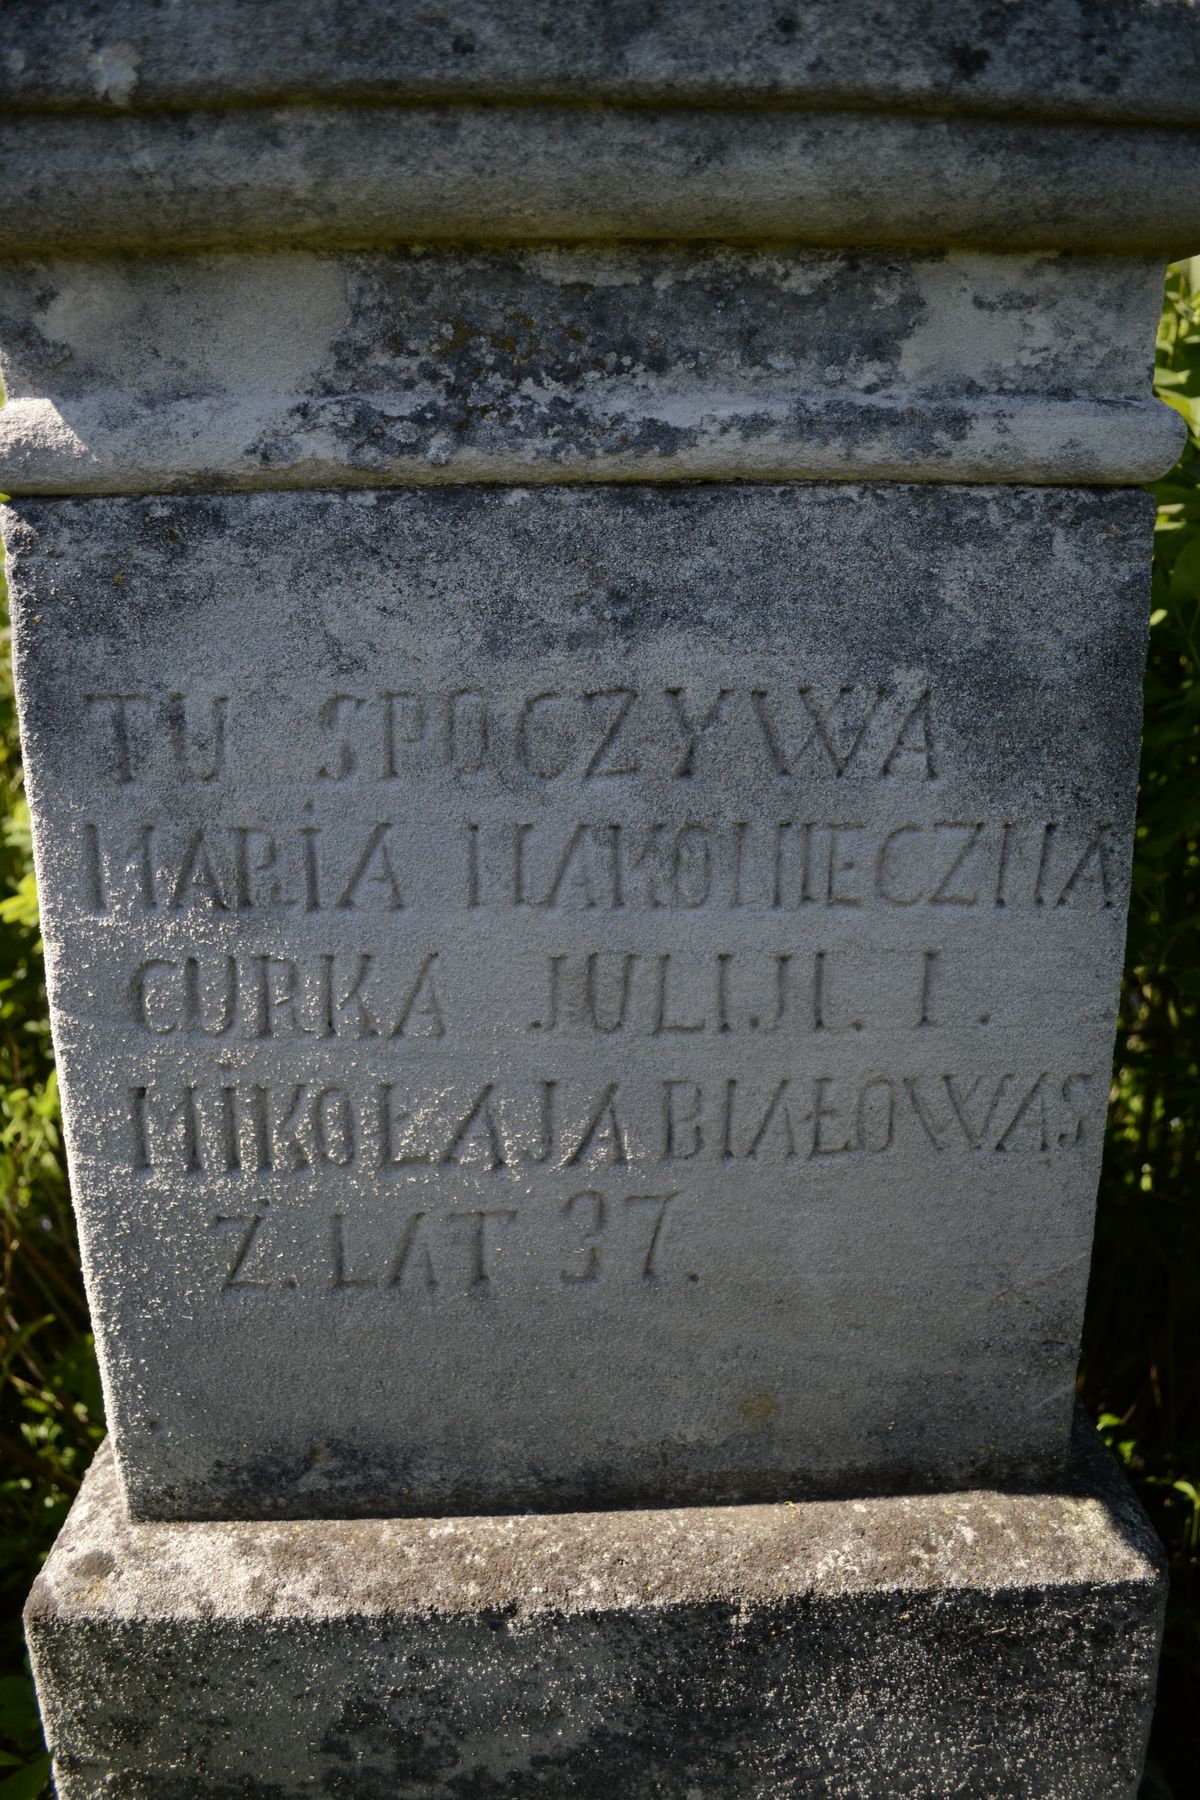 Inskrypcja z nagrobka Marii Nakoniecznej, cmentarz w Ihrownicy